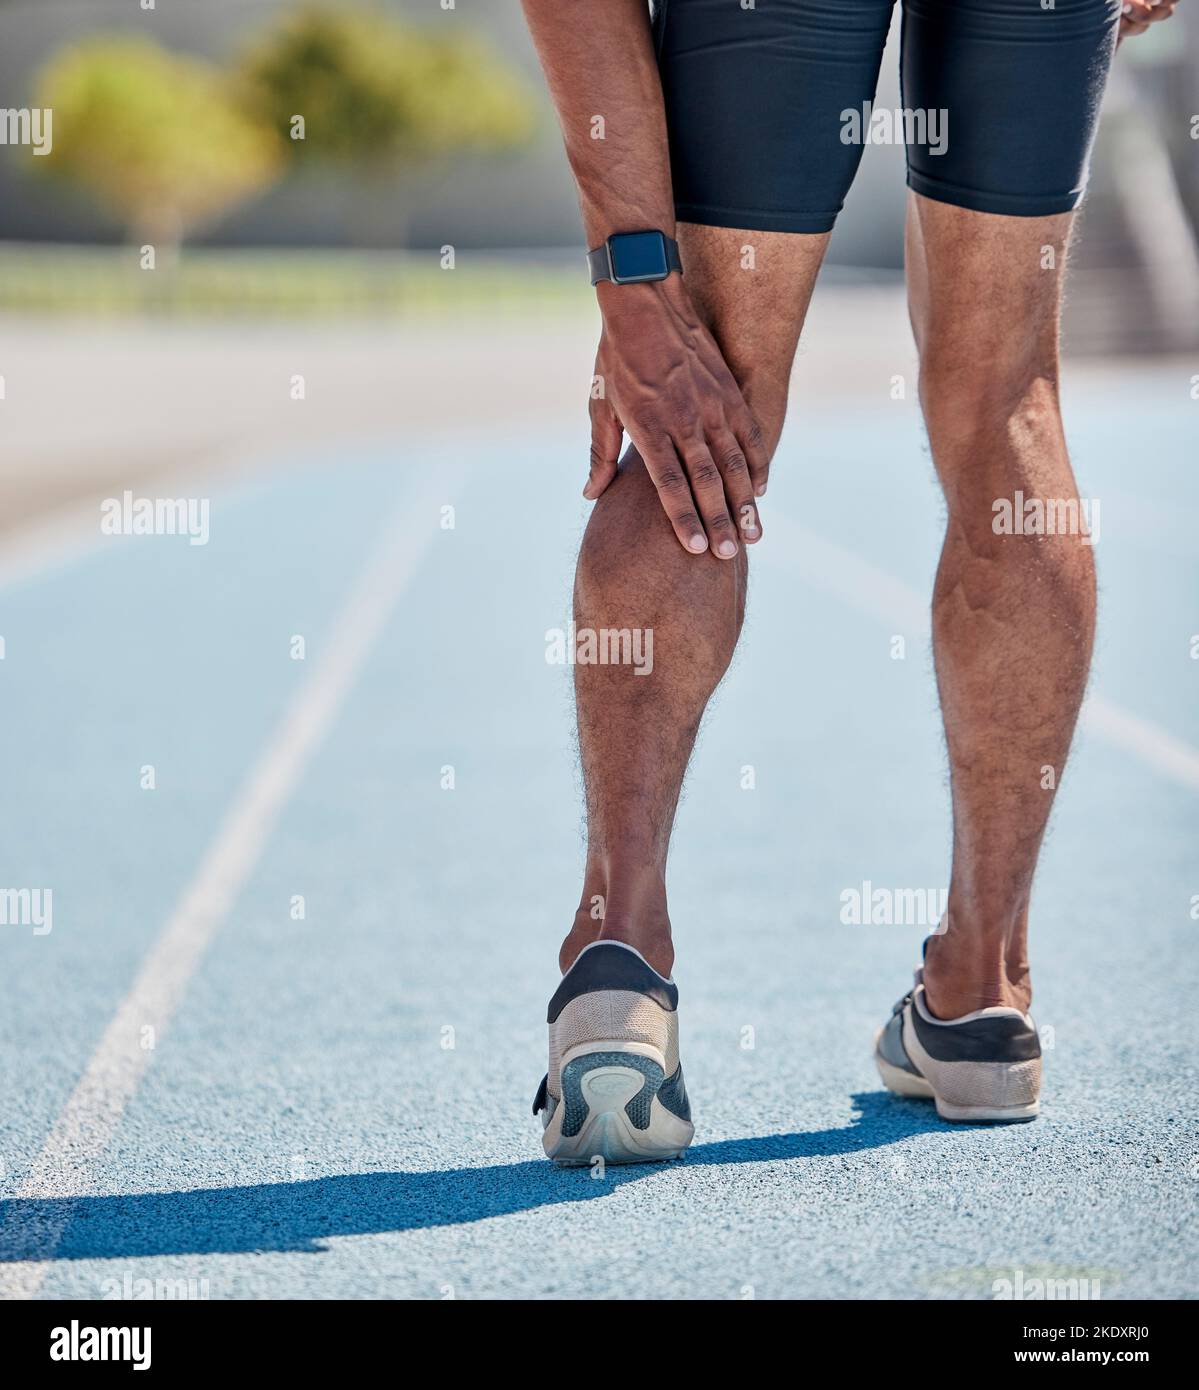 Lesioni alle gambe per l'uomo che corre in pista per allenamento cardio, gara sprint o gara maratona. Dolore muscolare, problema al polpaccio e atleta runner con Foto Stock